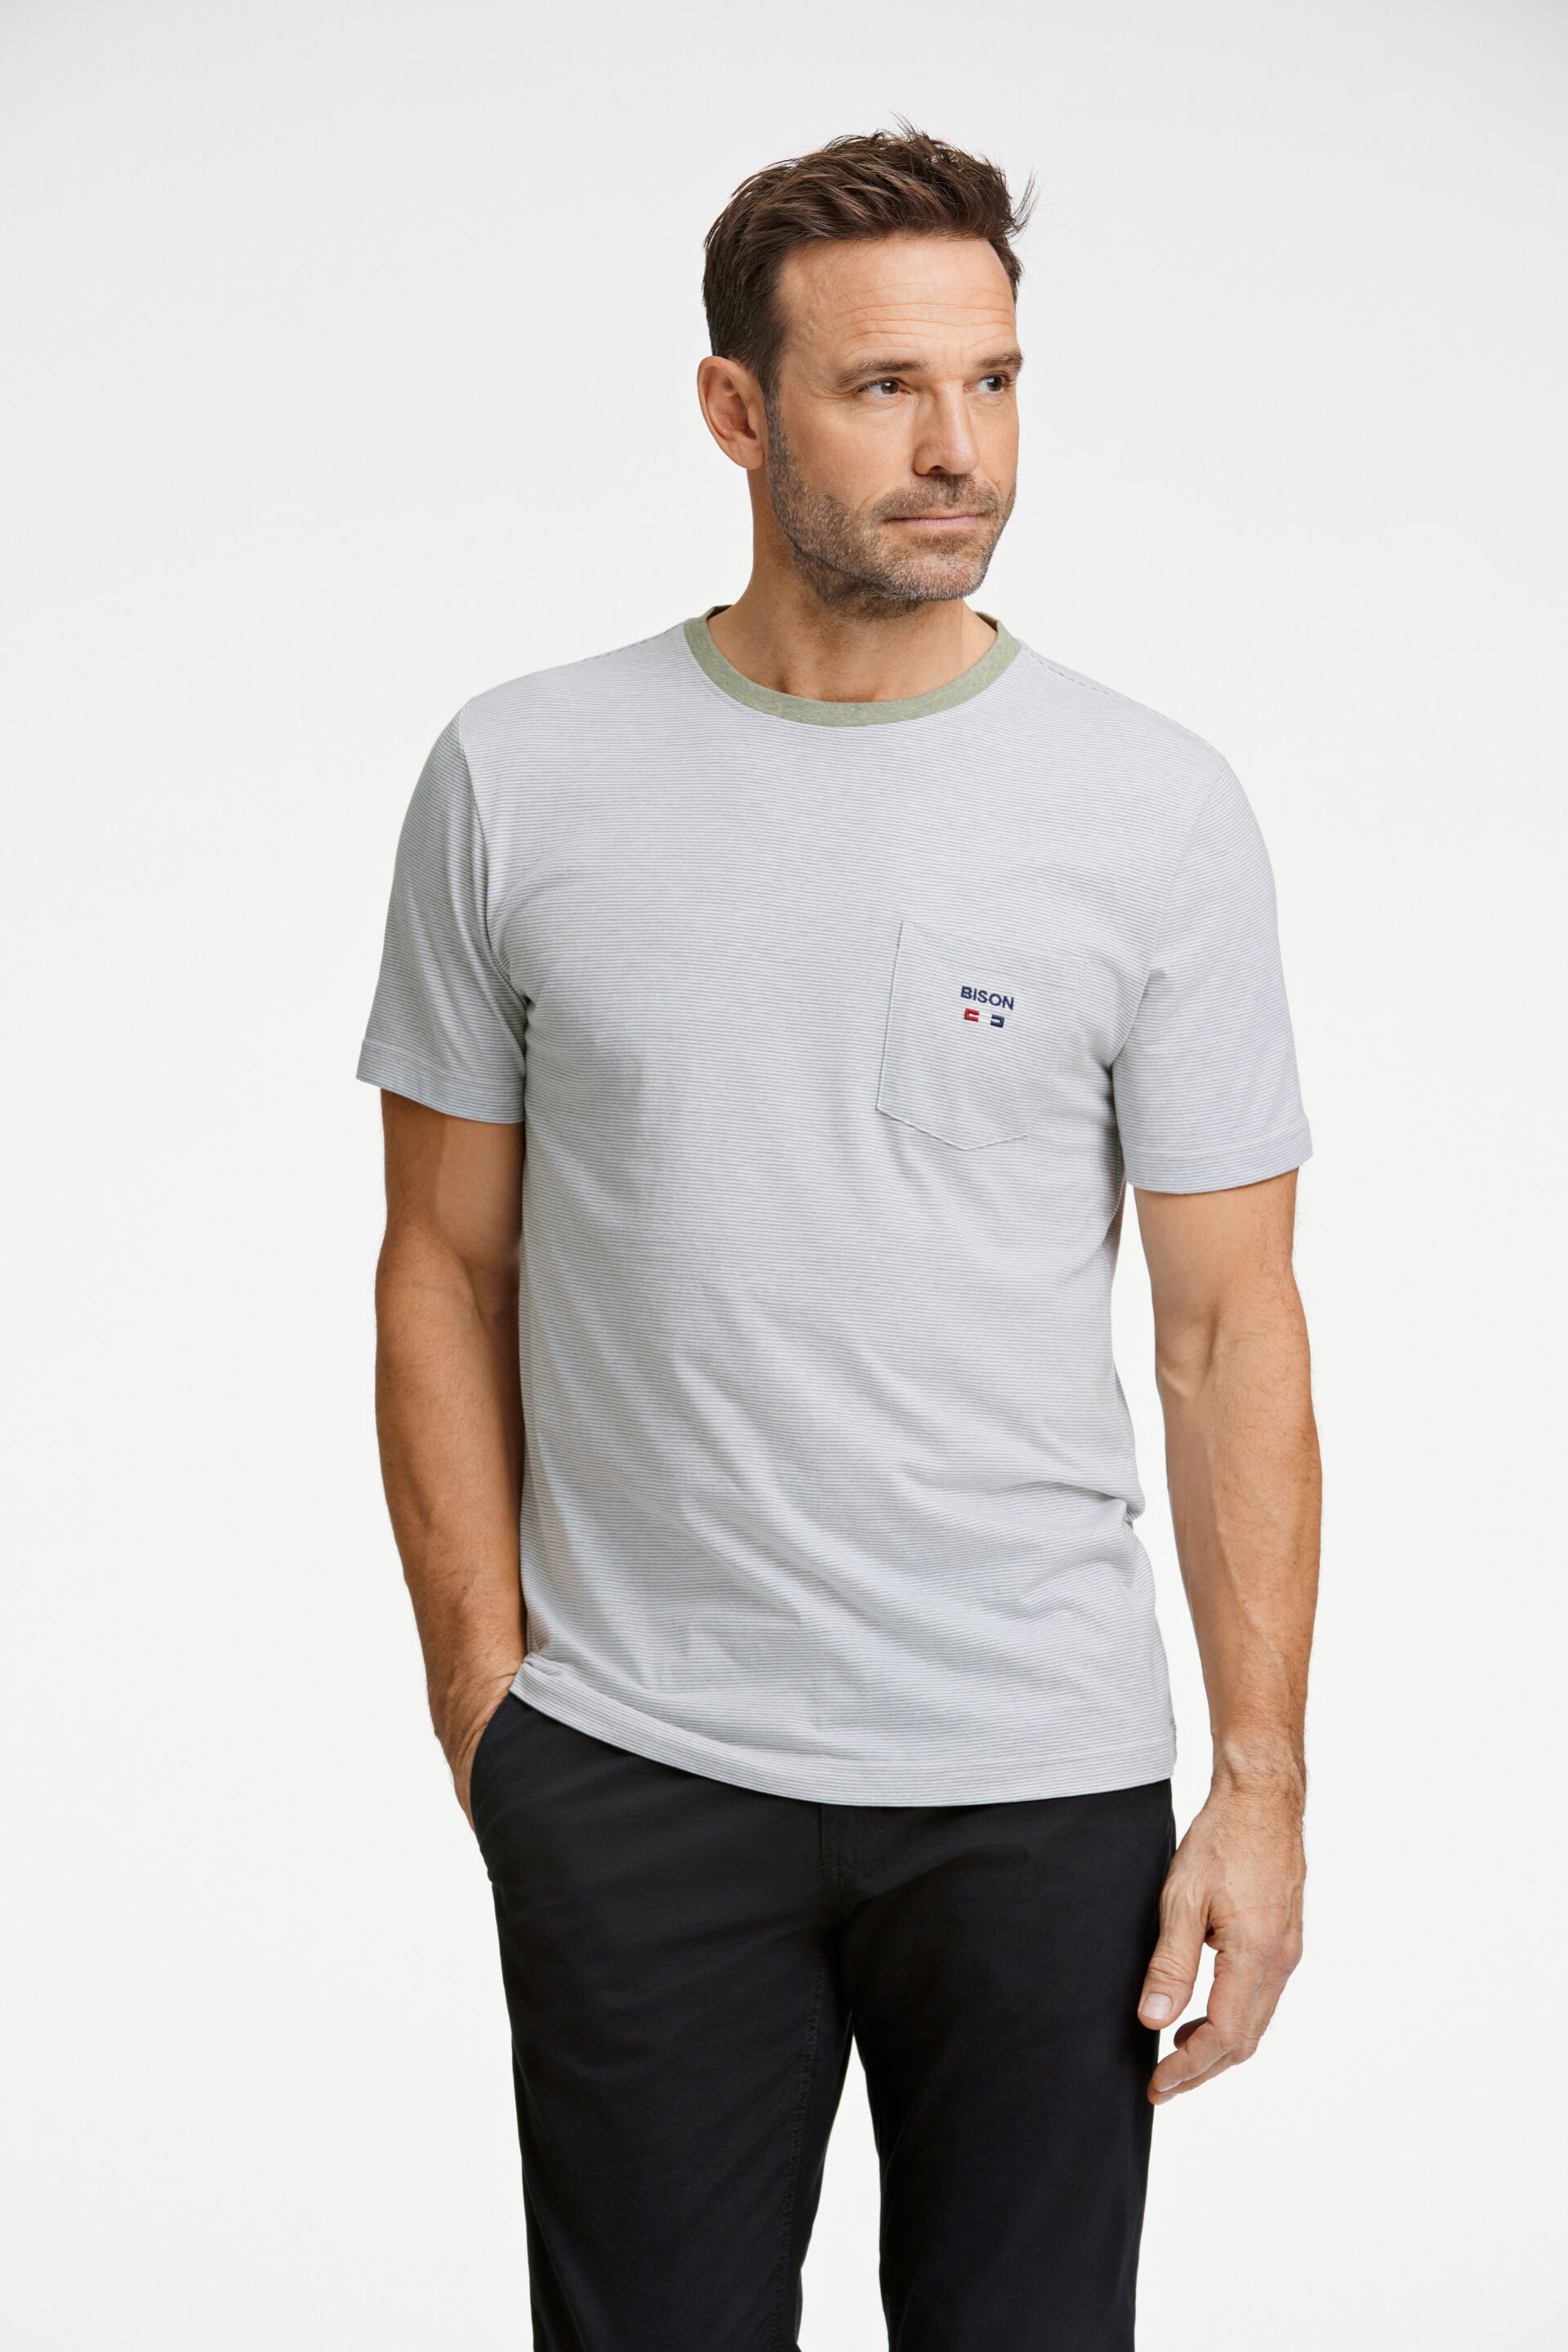 Bison  T-shirt Grøn 80-400120